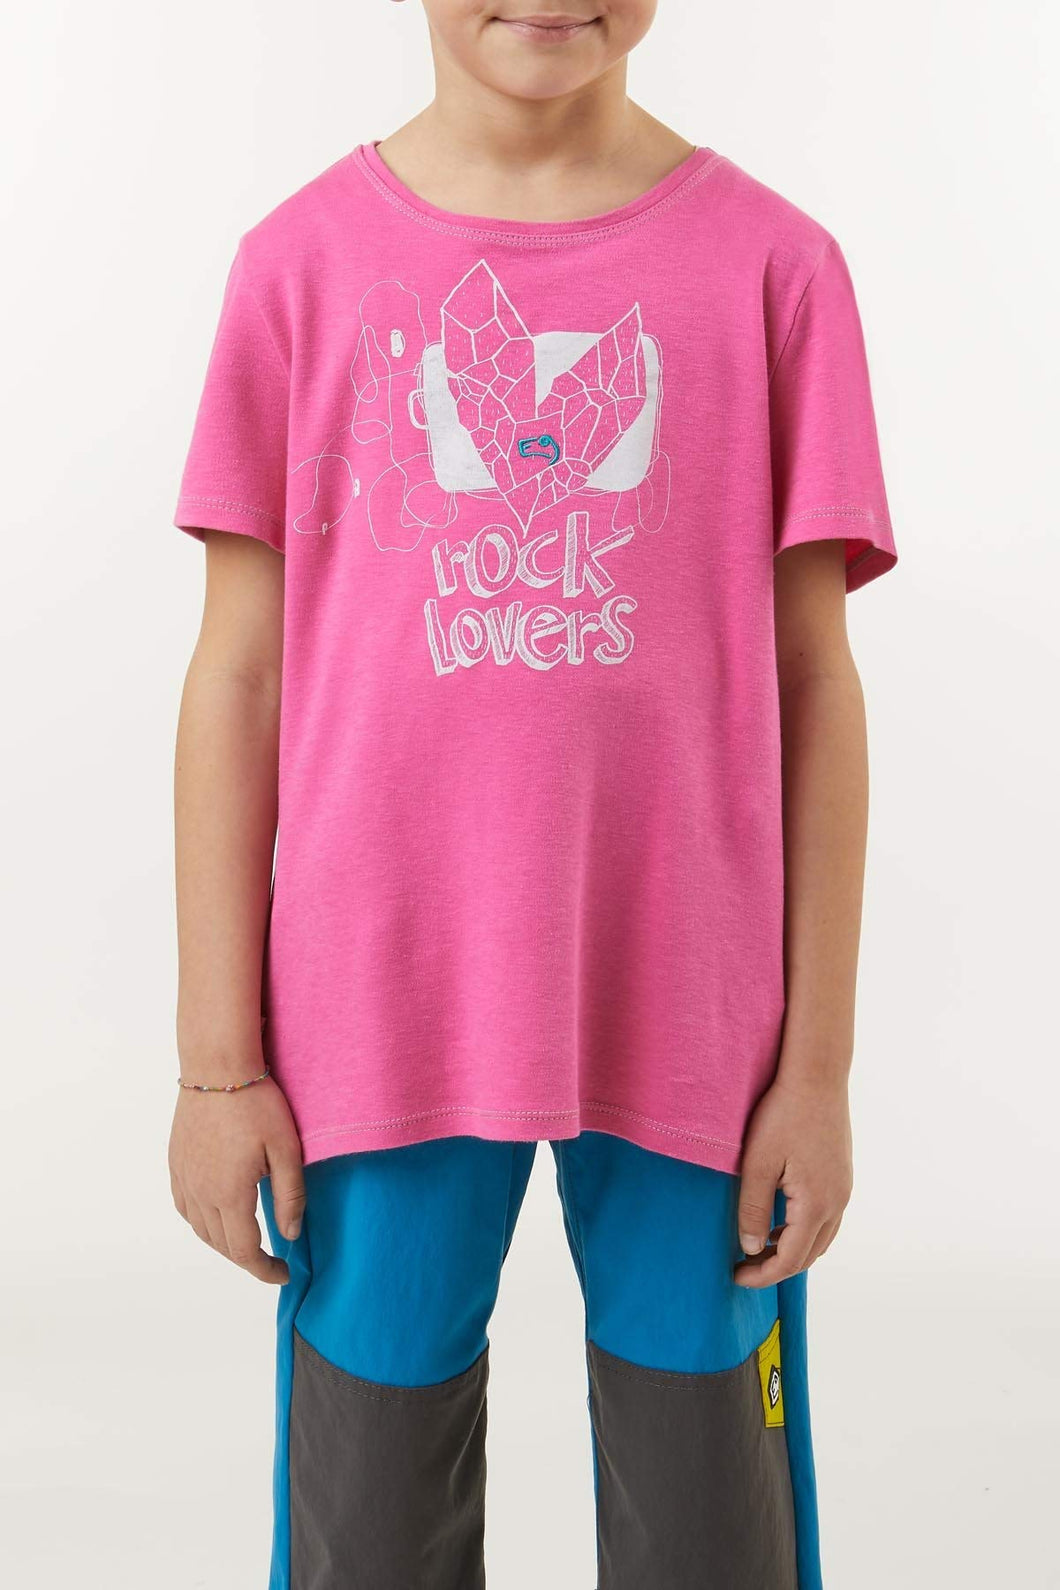 E9 Enove Love9 t-Shirt Bambina Color Carmen Made in Italy